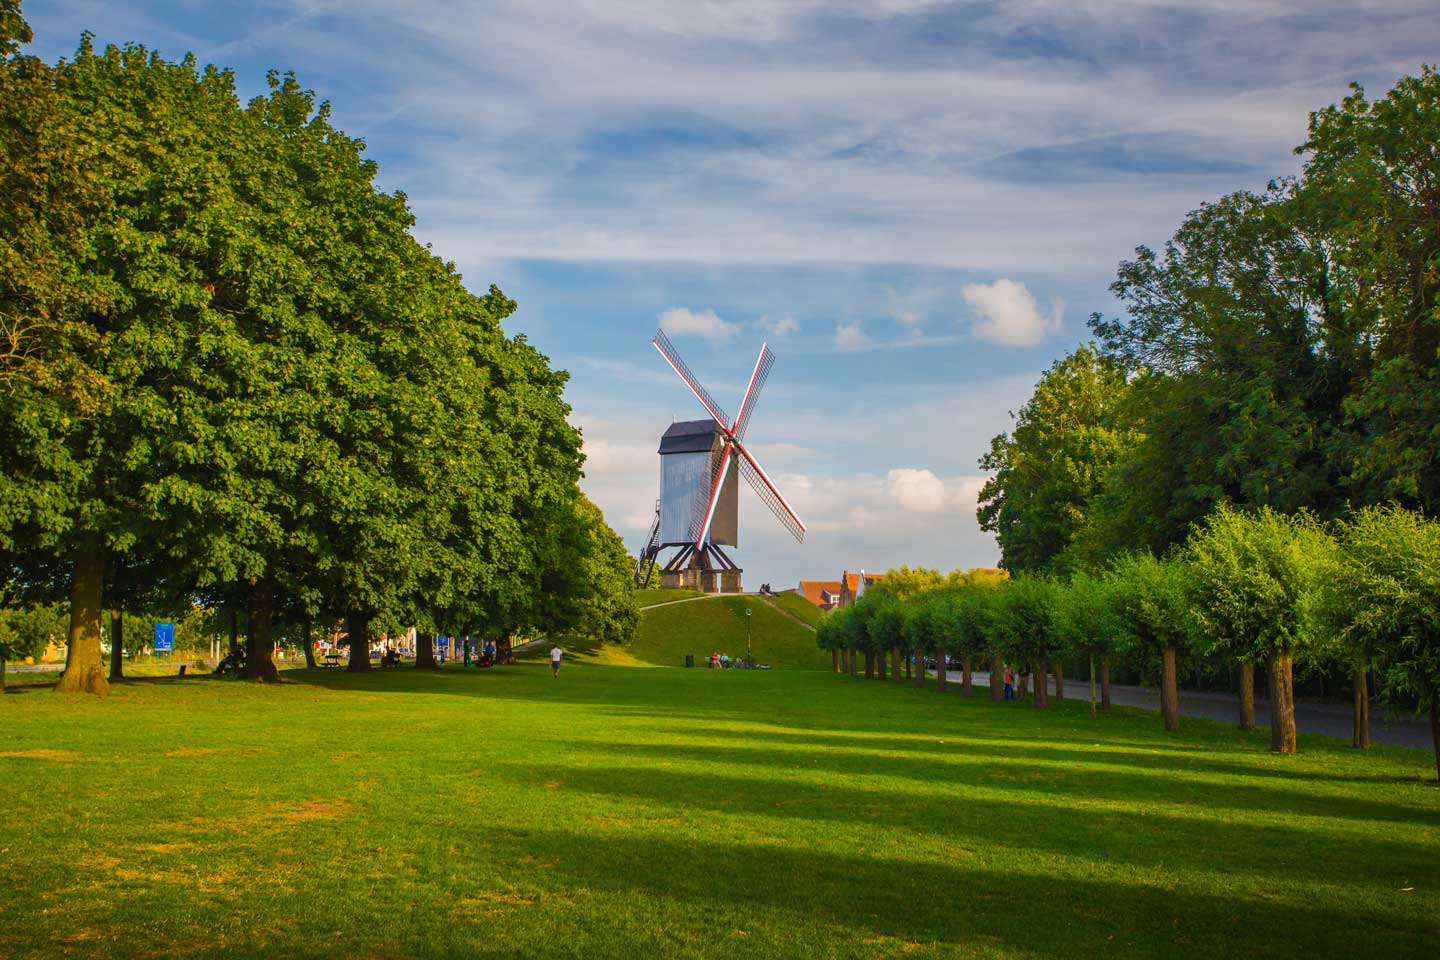 #2 Windmills of Bruges